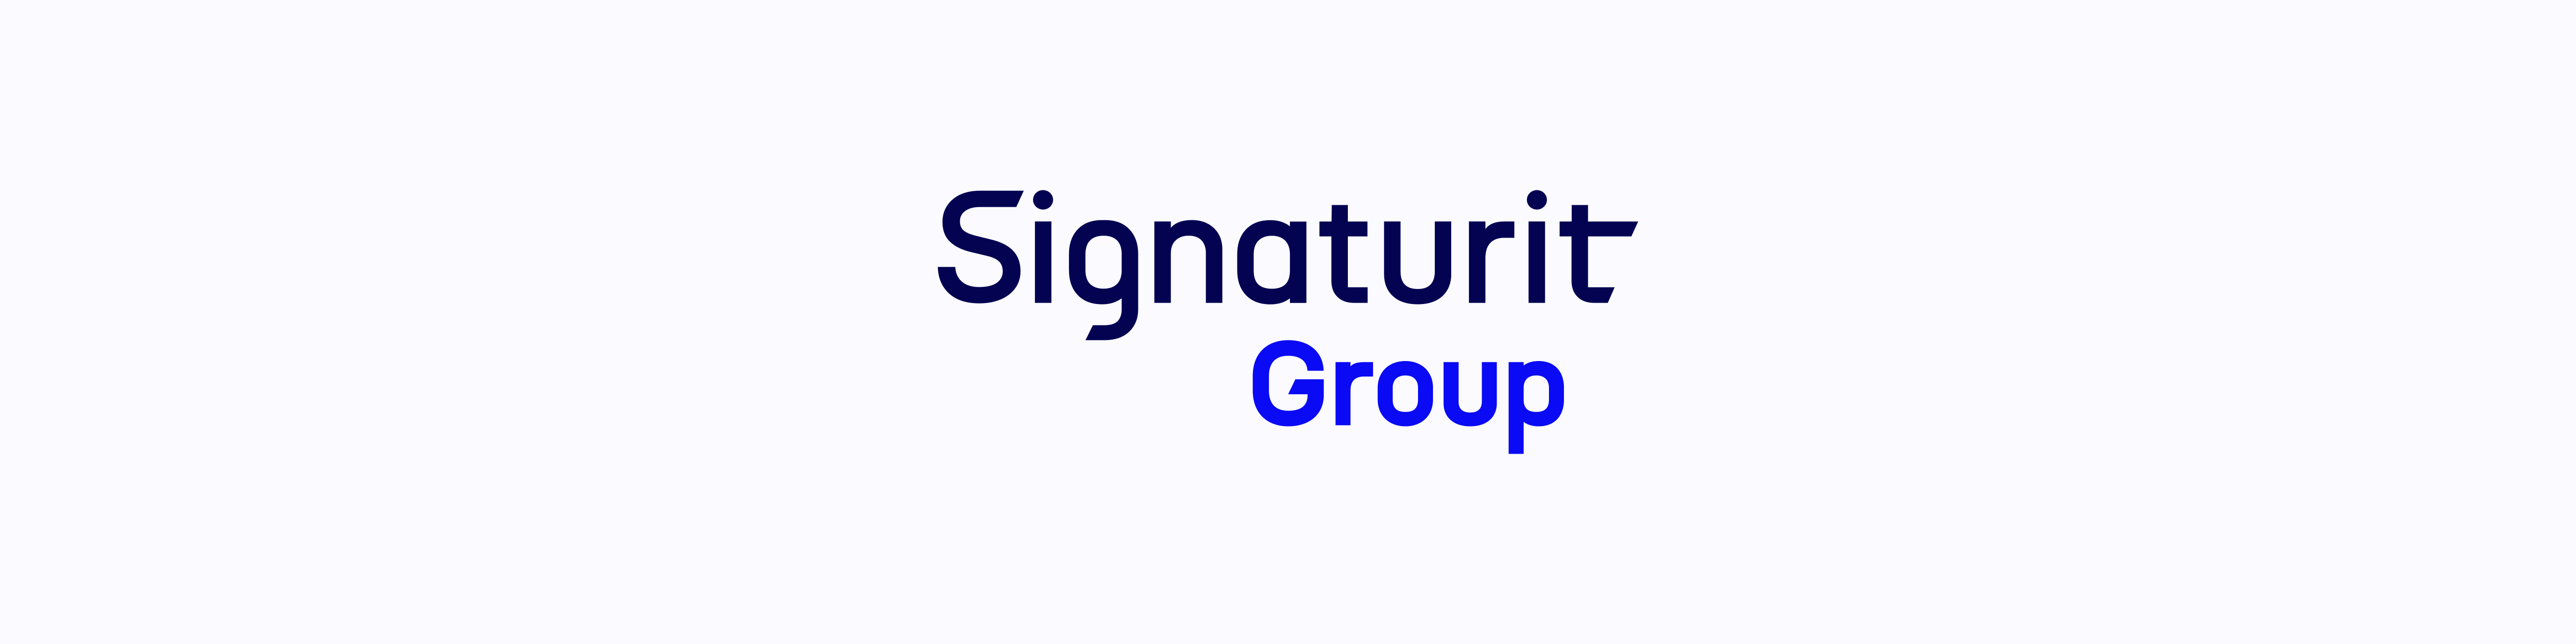 Firma electrónica: el nuevo grupo Signaturit se lanza a la conquista de Europa